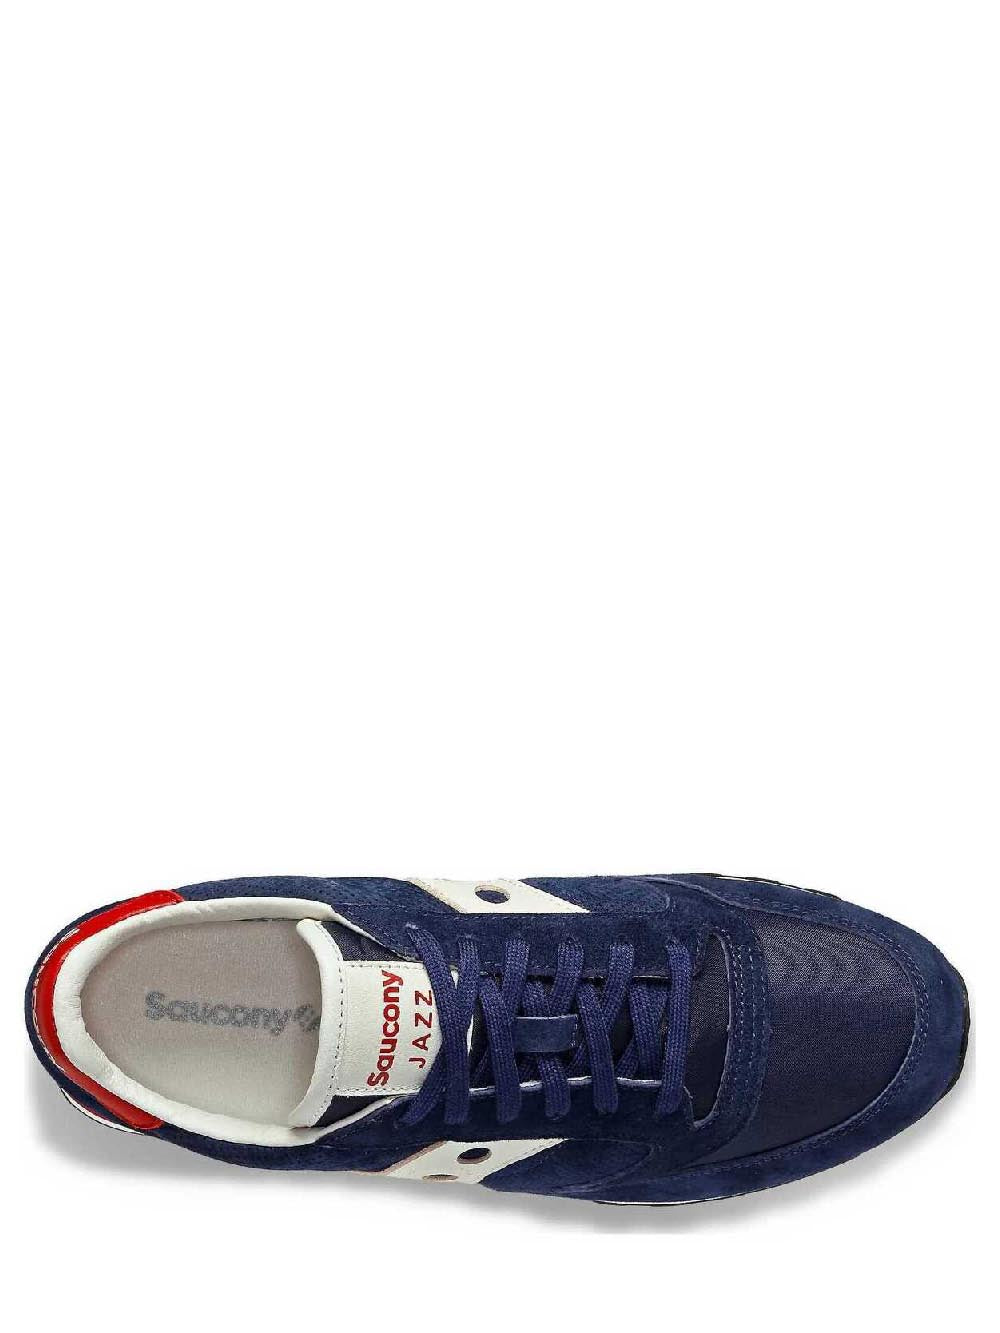 Saucony Sneakers Unisex Blu